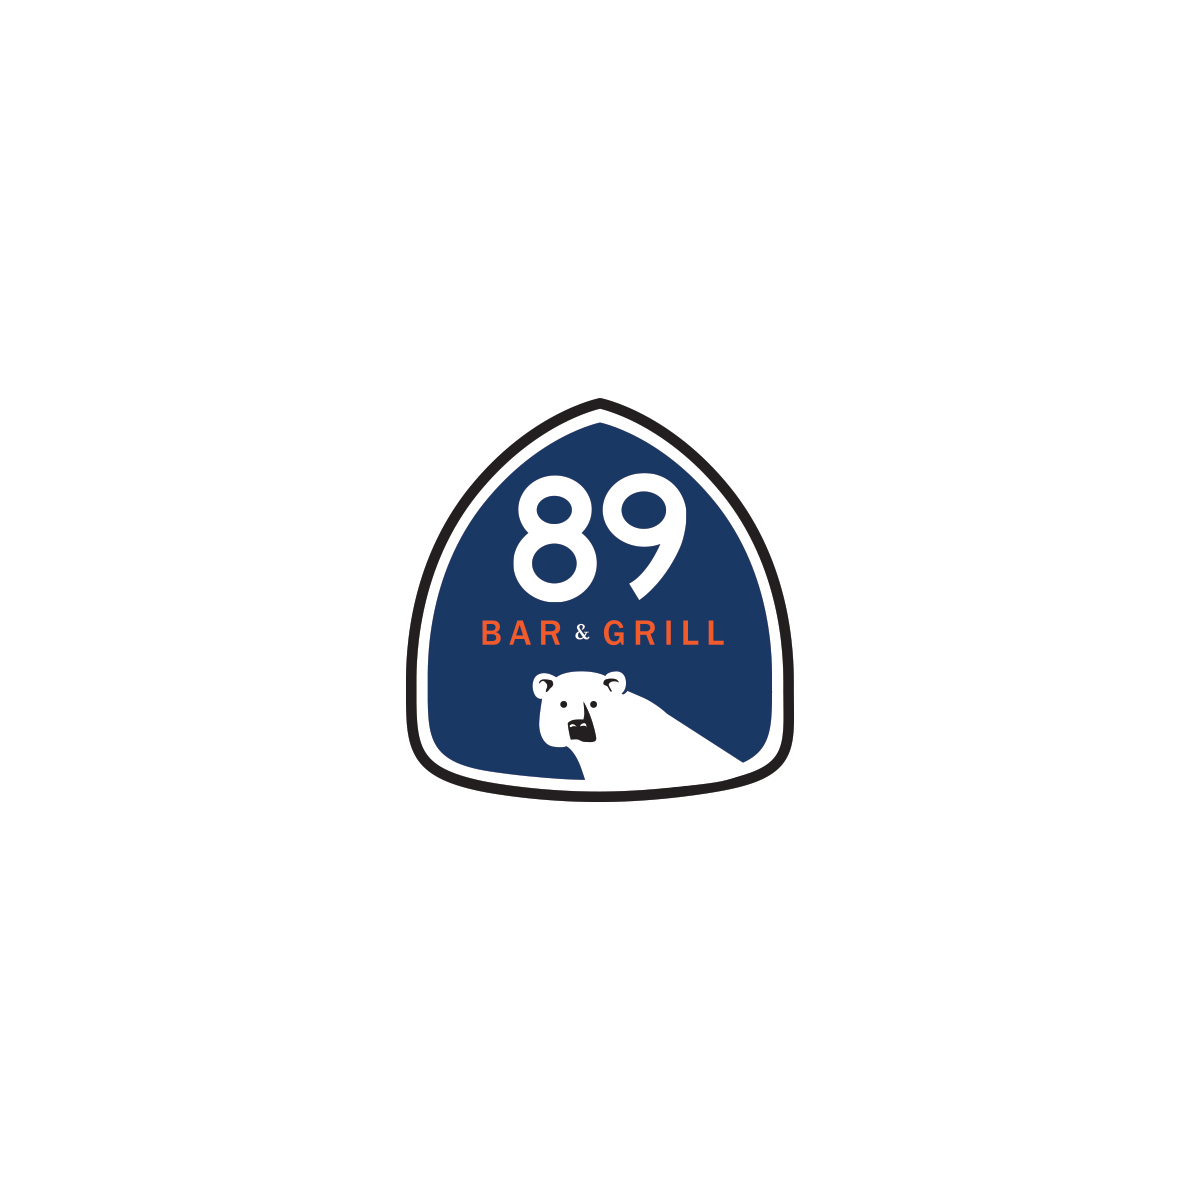 89 BAR & GRILL - Logo